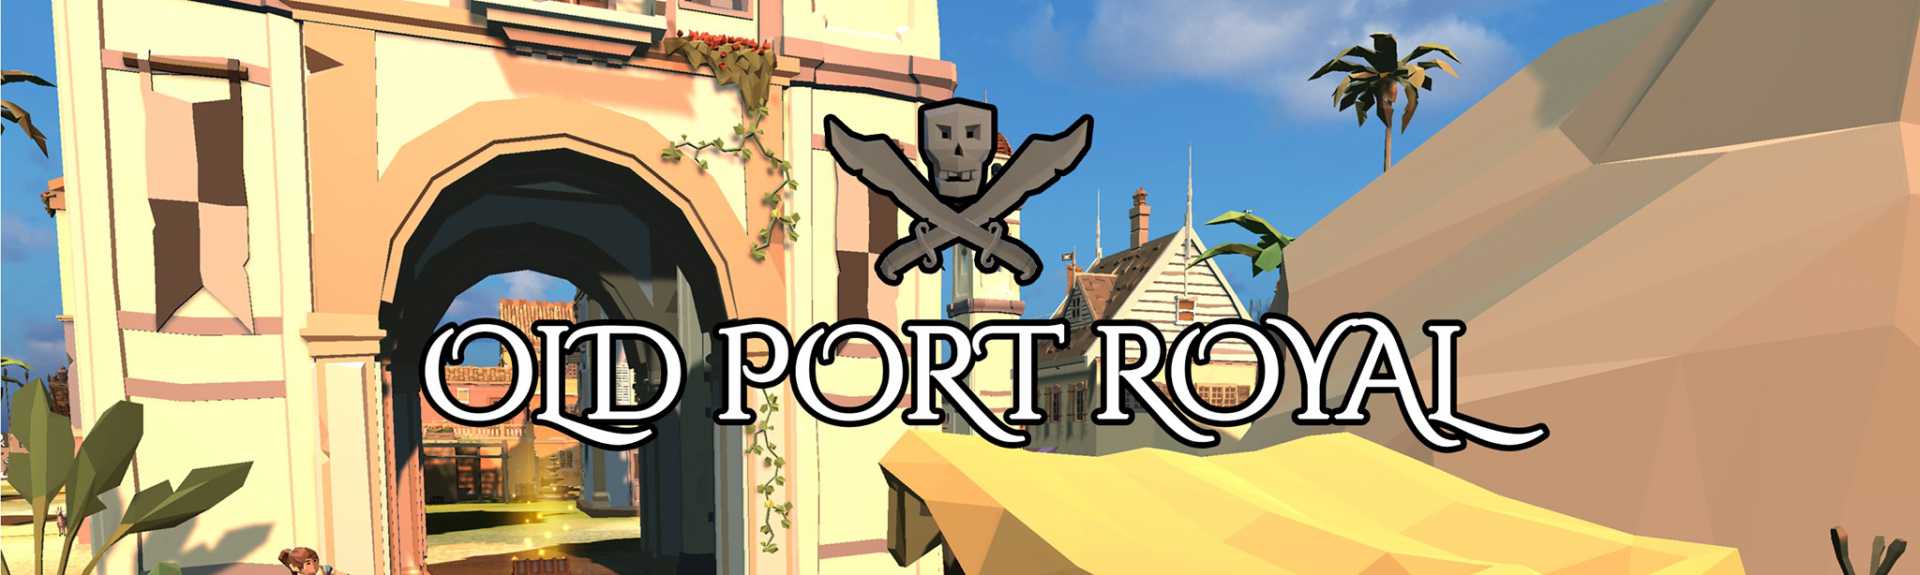 Old Port Royal